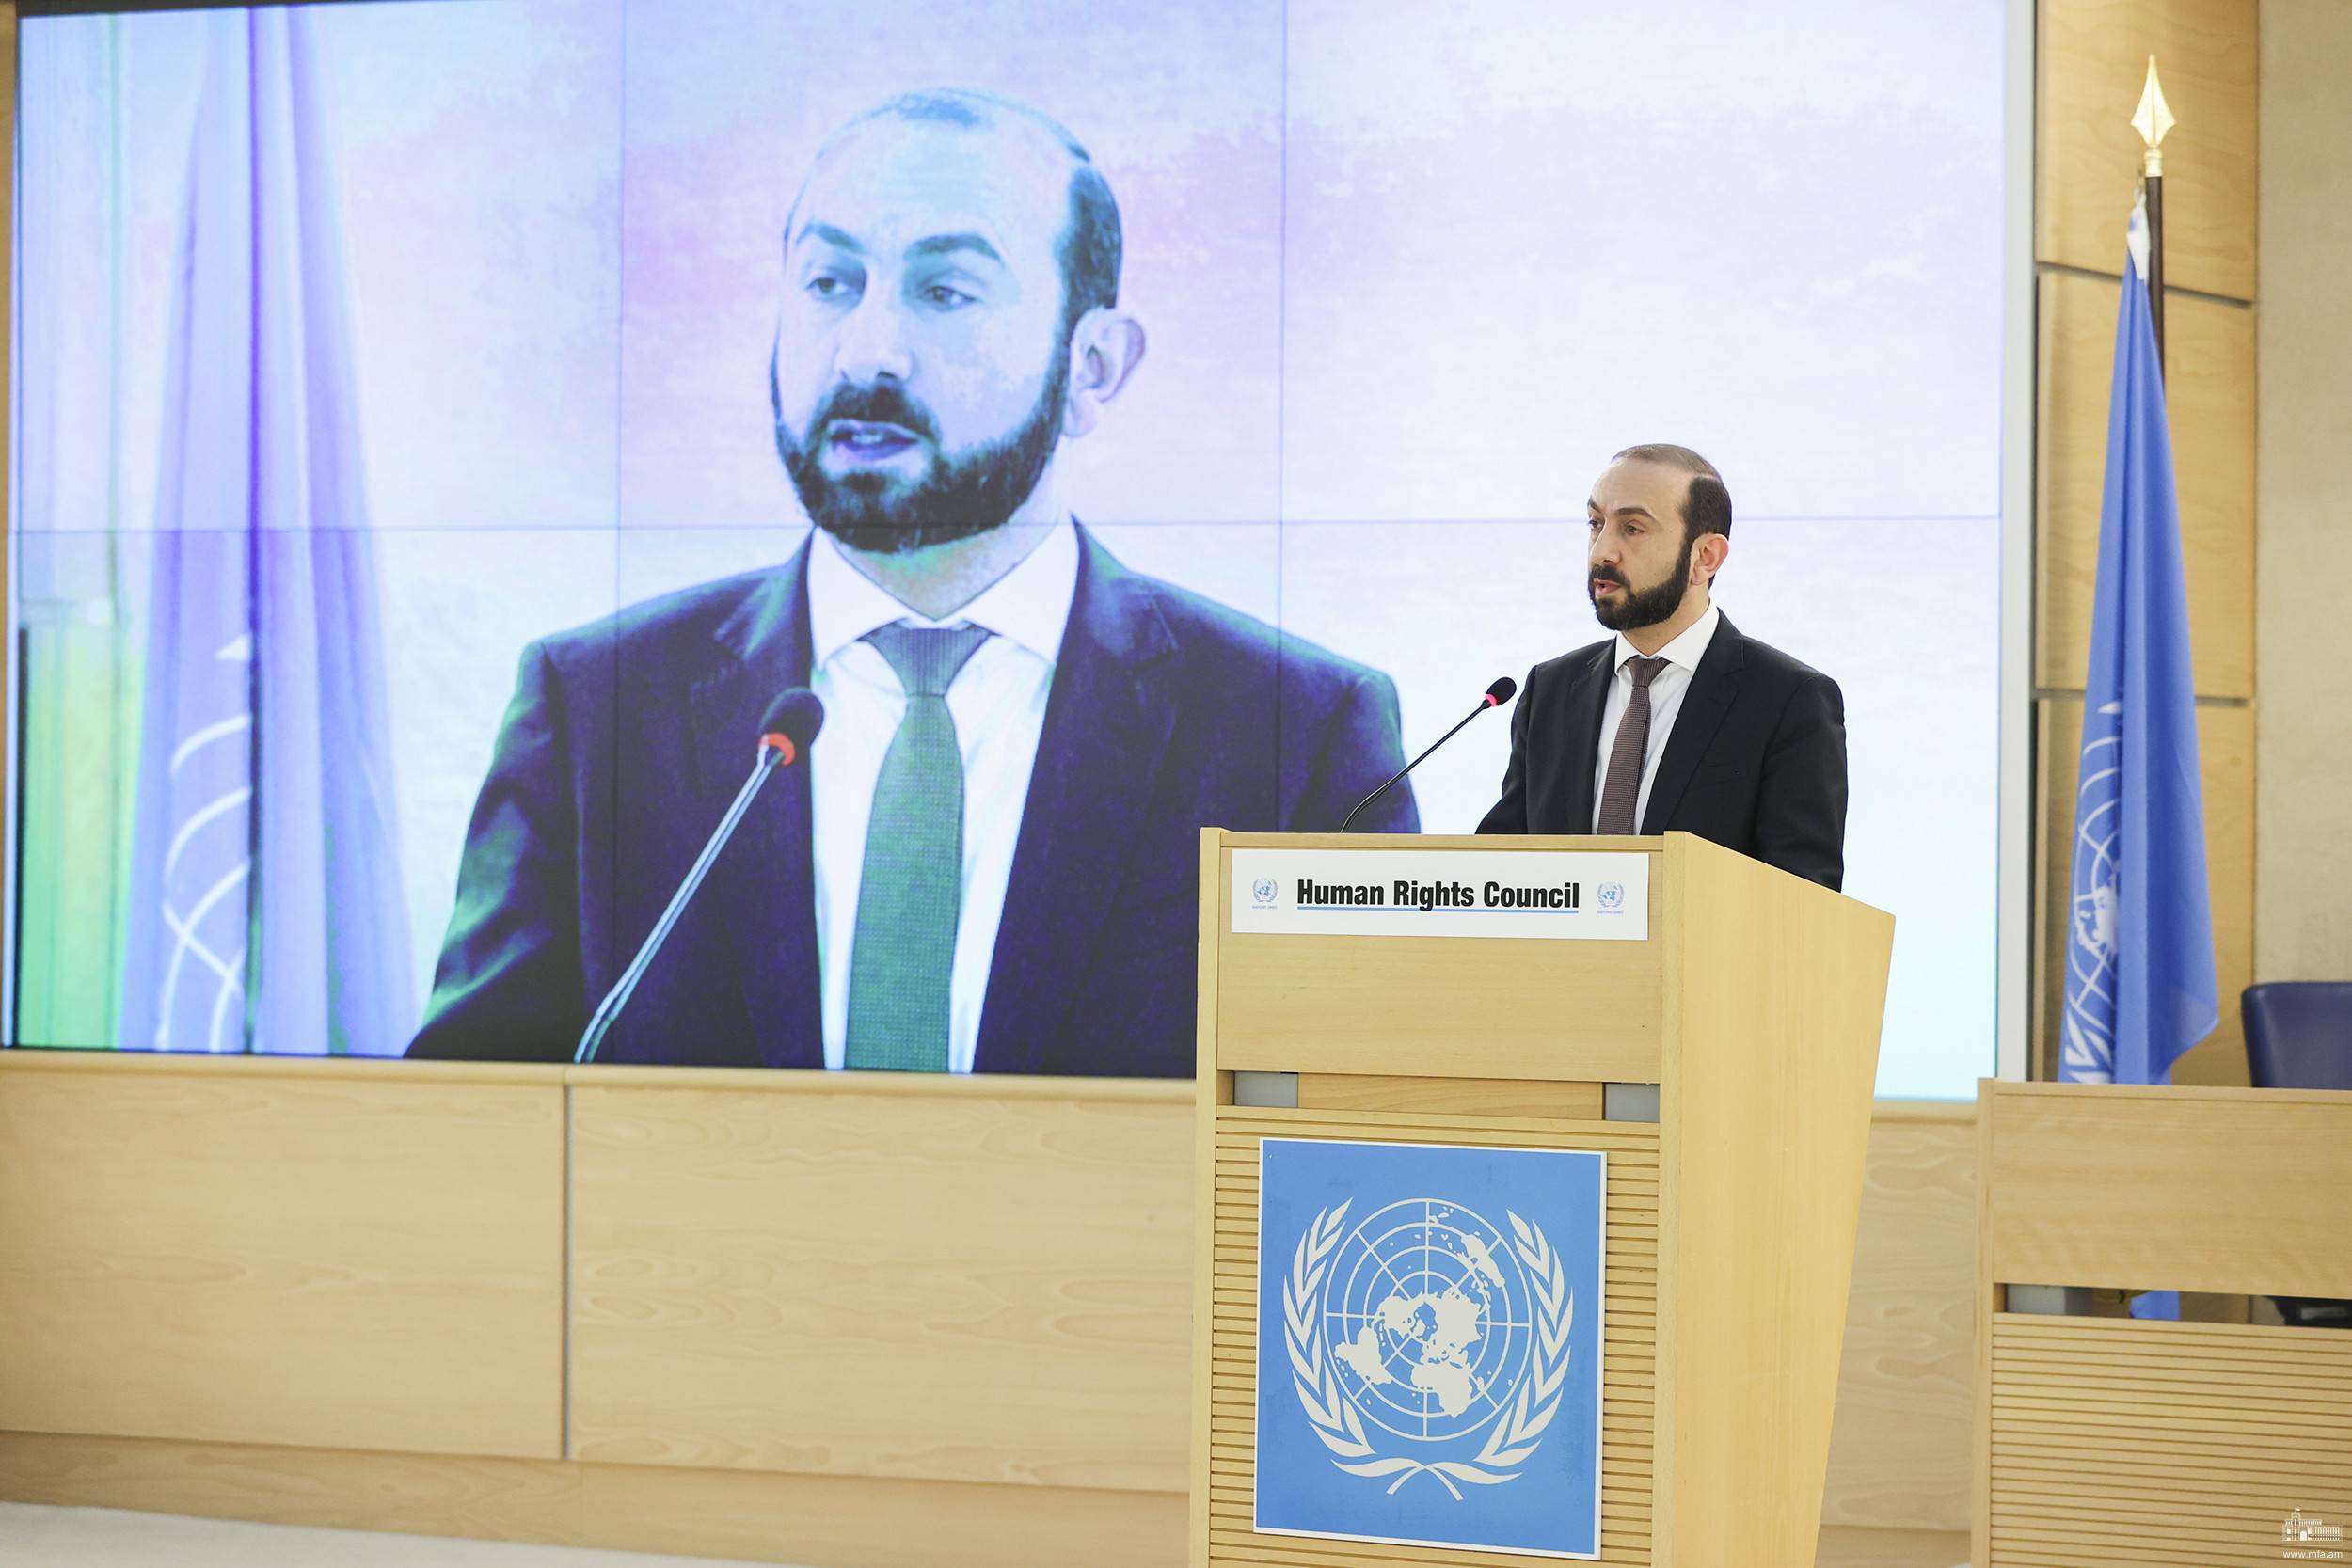 Հայաստանի արտաքին գործերի նախարար Արարատ Միրզոյանը մասնակցել է ՄԱԿ մարդու իրավունքների խորհրդի 52-րդ նիստին և հանդես եկել ելույթով